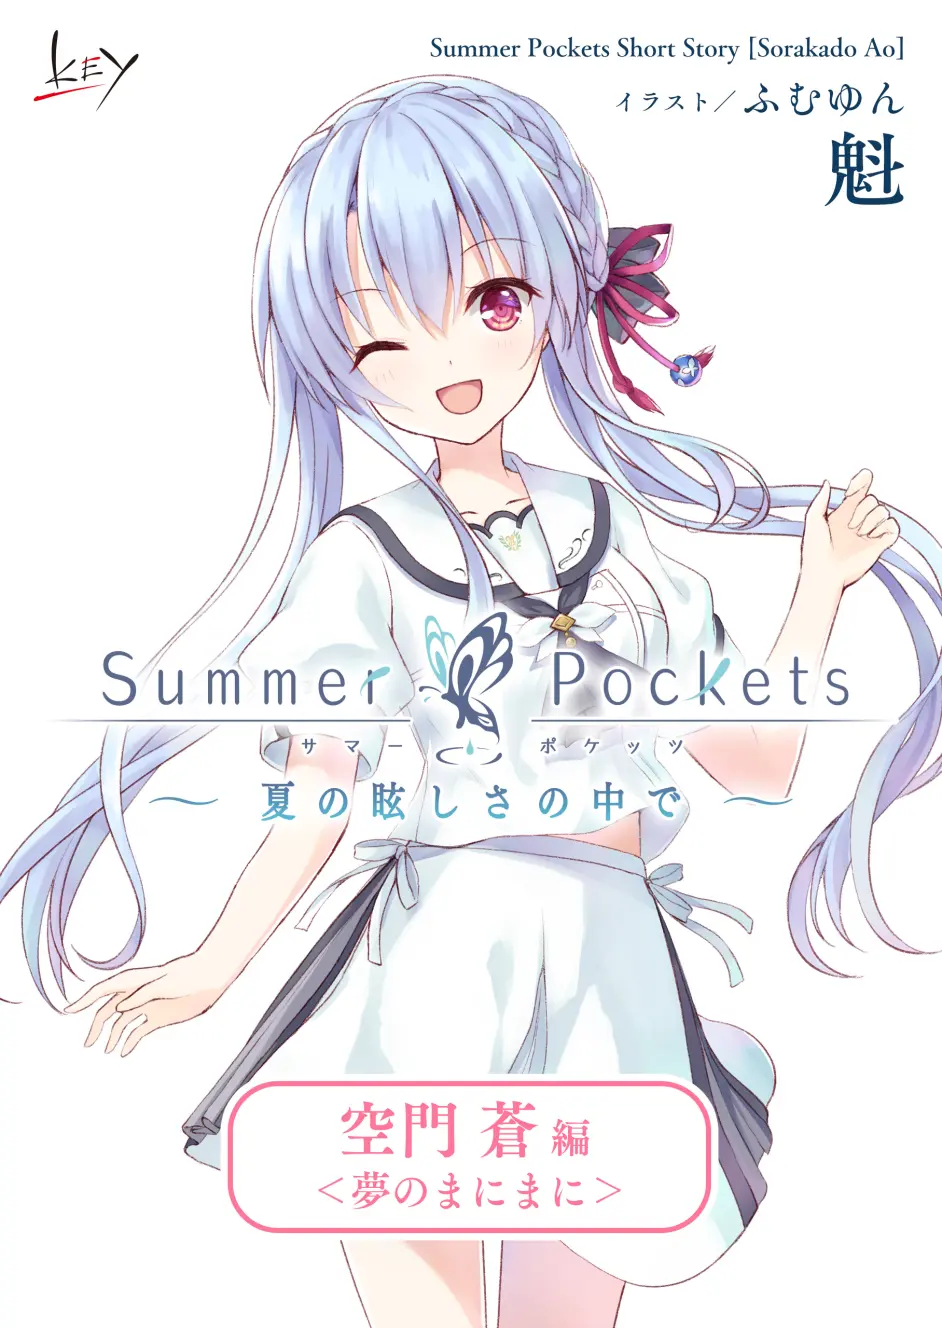 Summer Pockets 小短篇 在那耀眼的夏日中 空門蒼編 哔哩哔哩